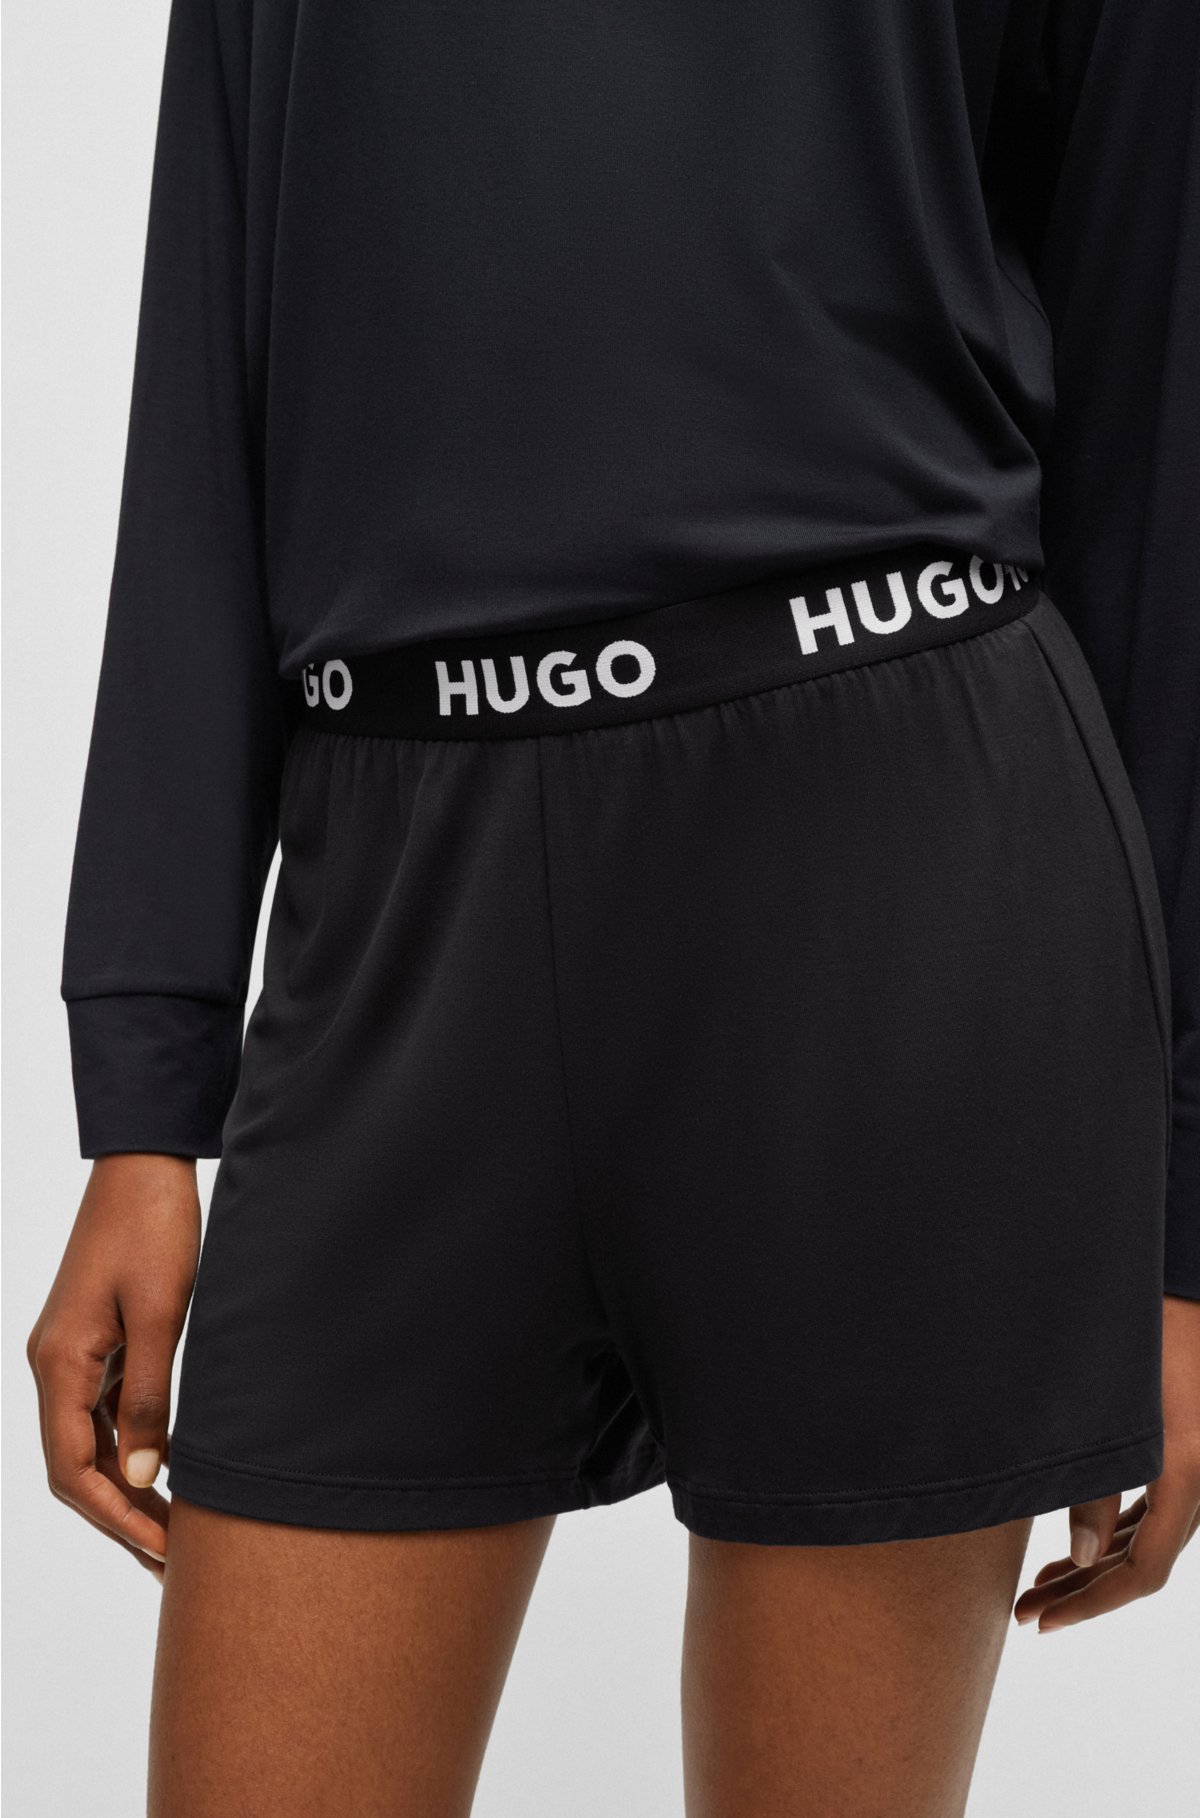 pyjama logo HUGO with Stretch-jersey waistband shorts -